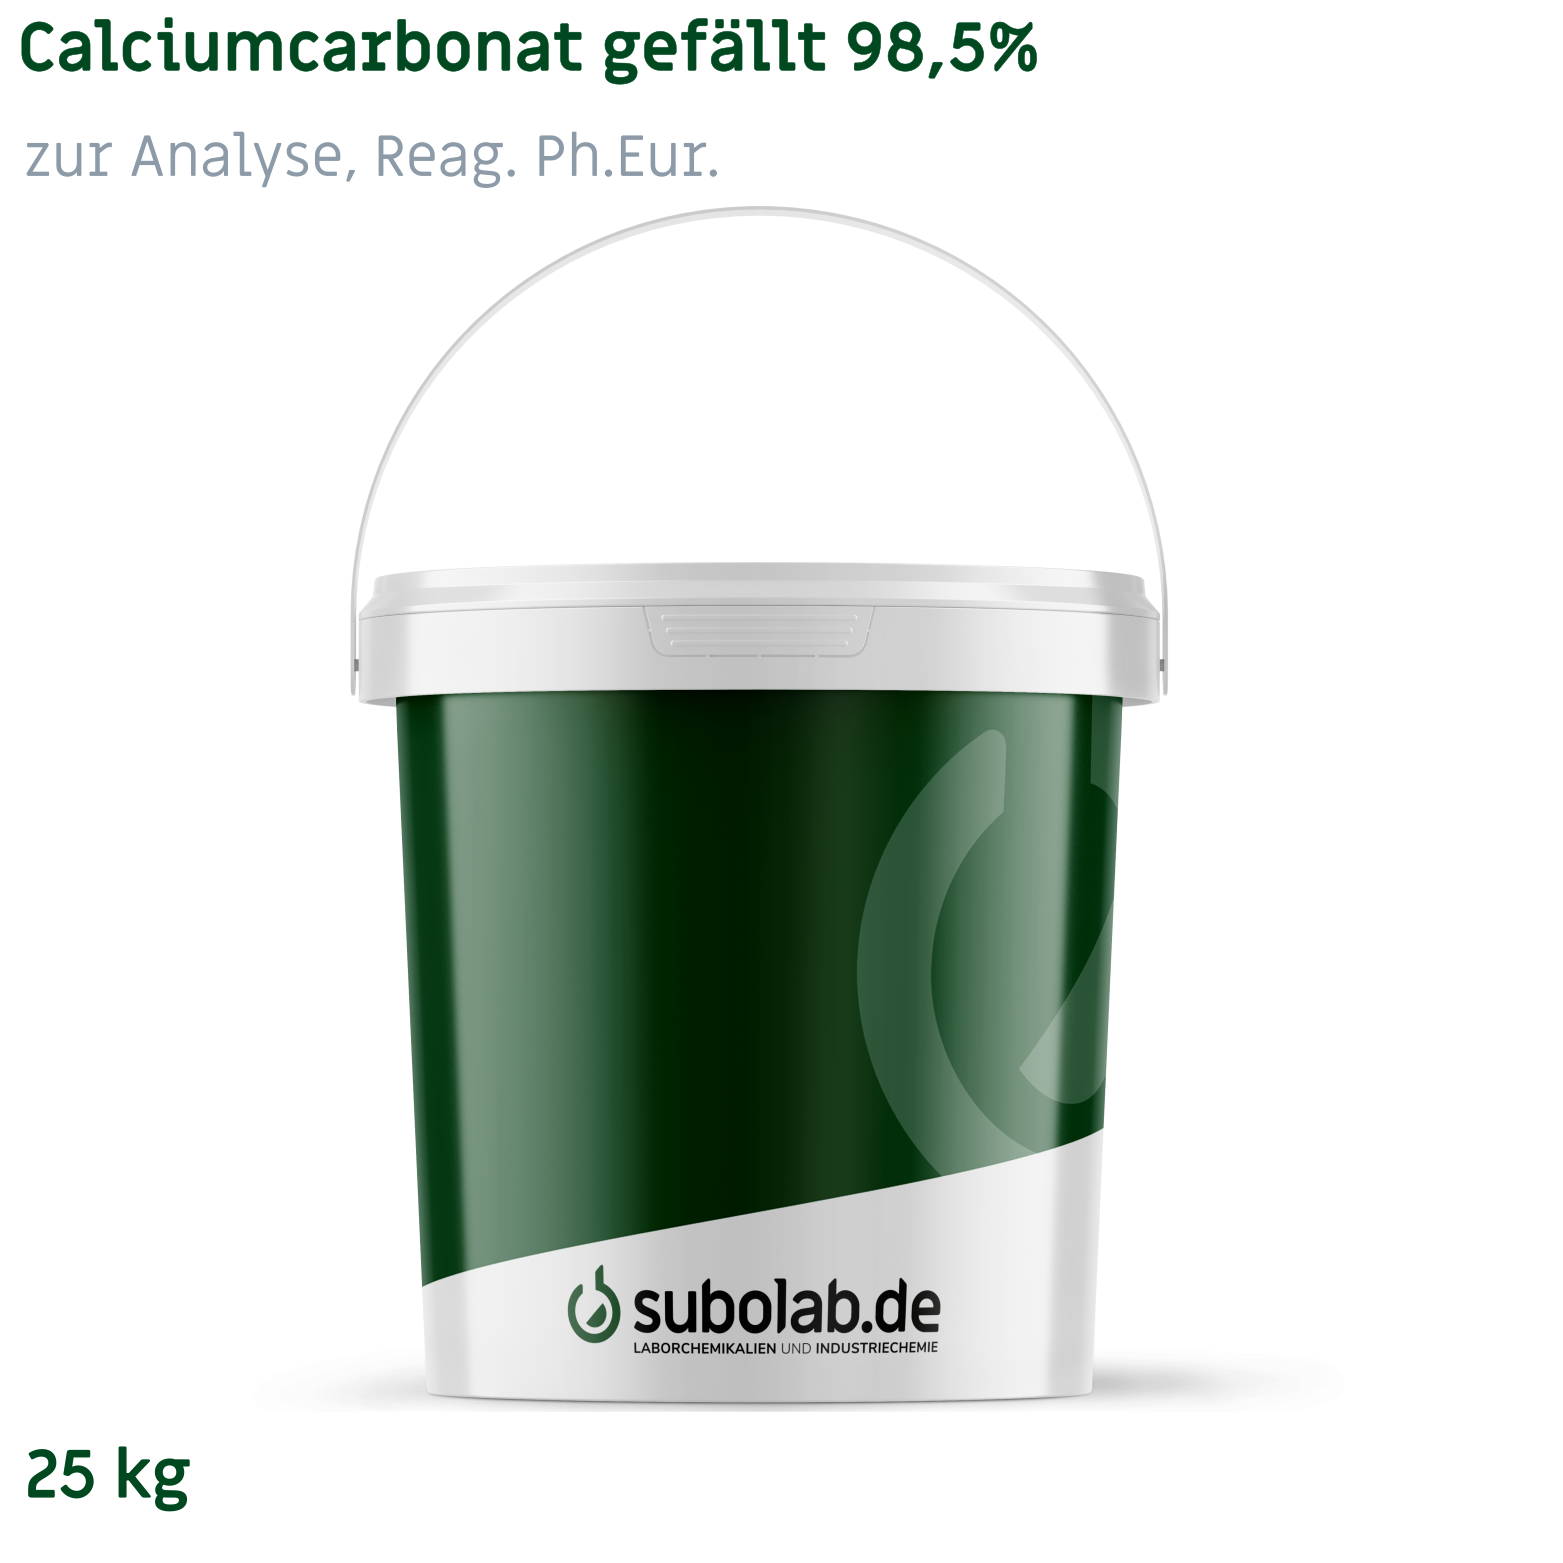 Bild von Calciumcarbonat gefällt 98,5% zur Analyse, Reag. Ph.Eur. (25 kg)